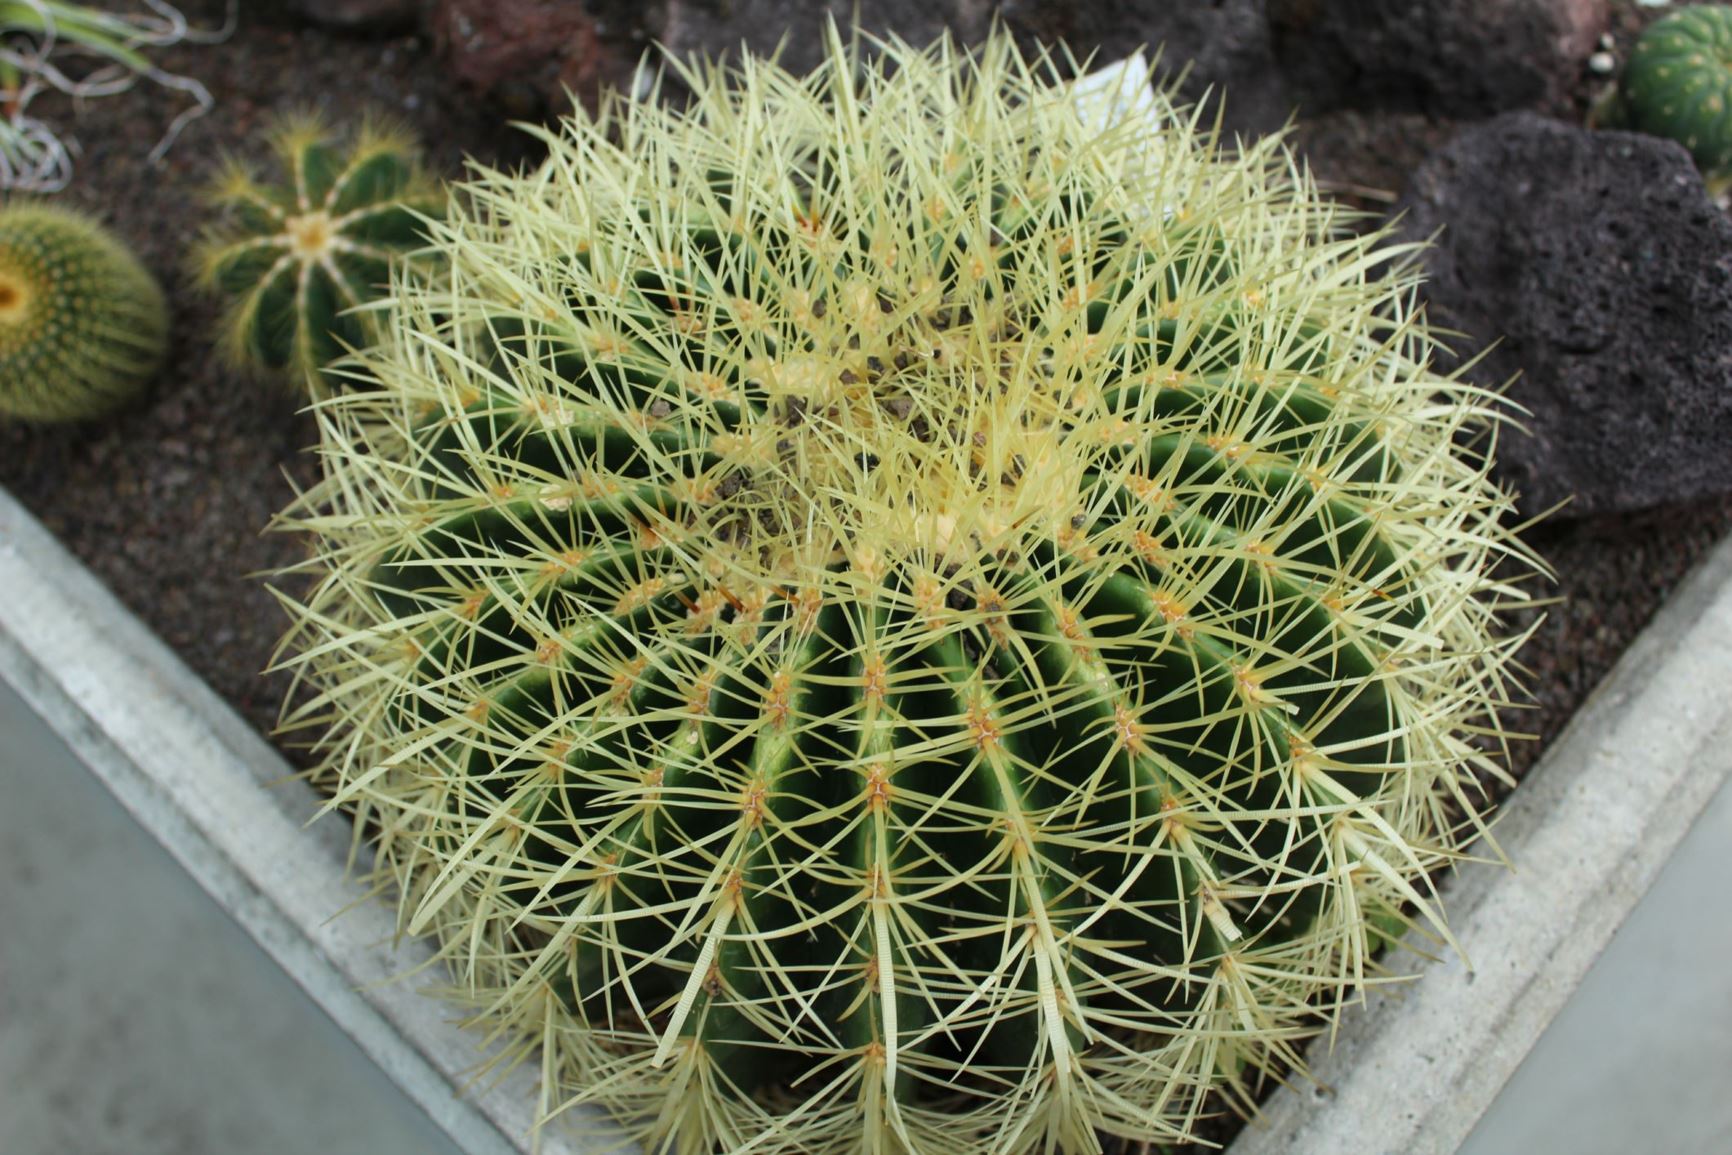 Echinocactus grusonii - Schoonmoedersstoel, Golden barrel cactus, golden ball, mother-in-law's cushion